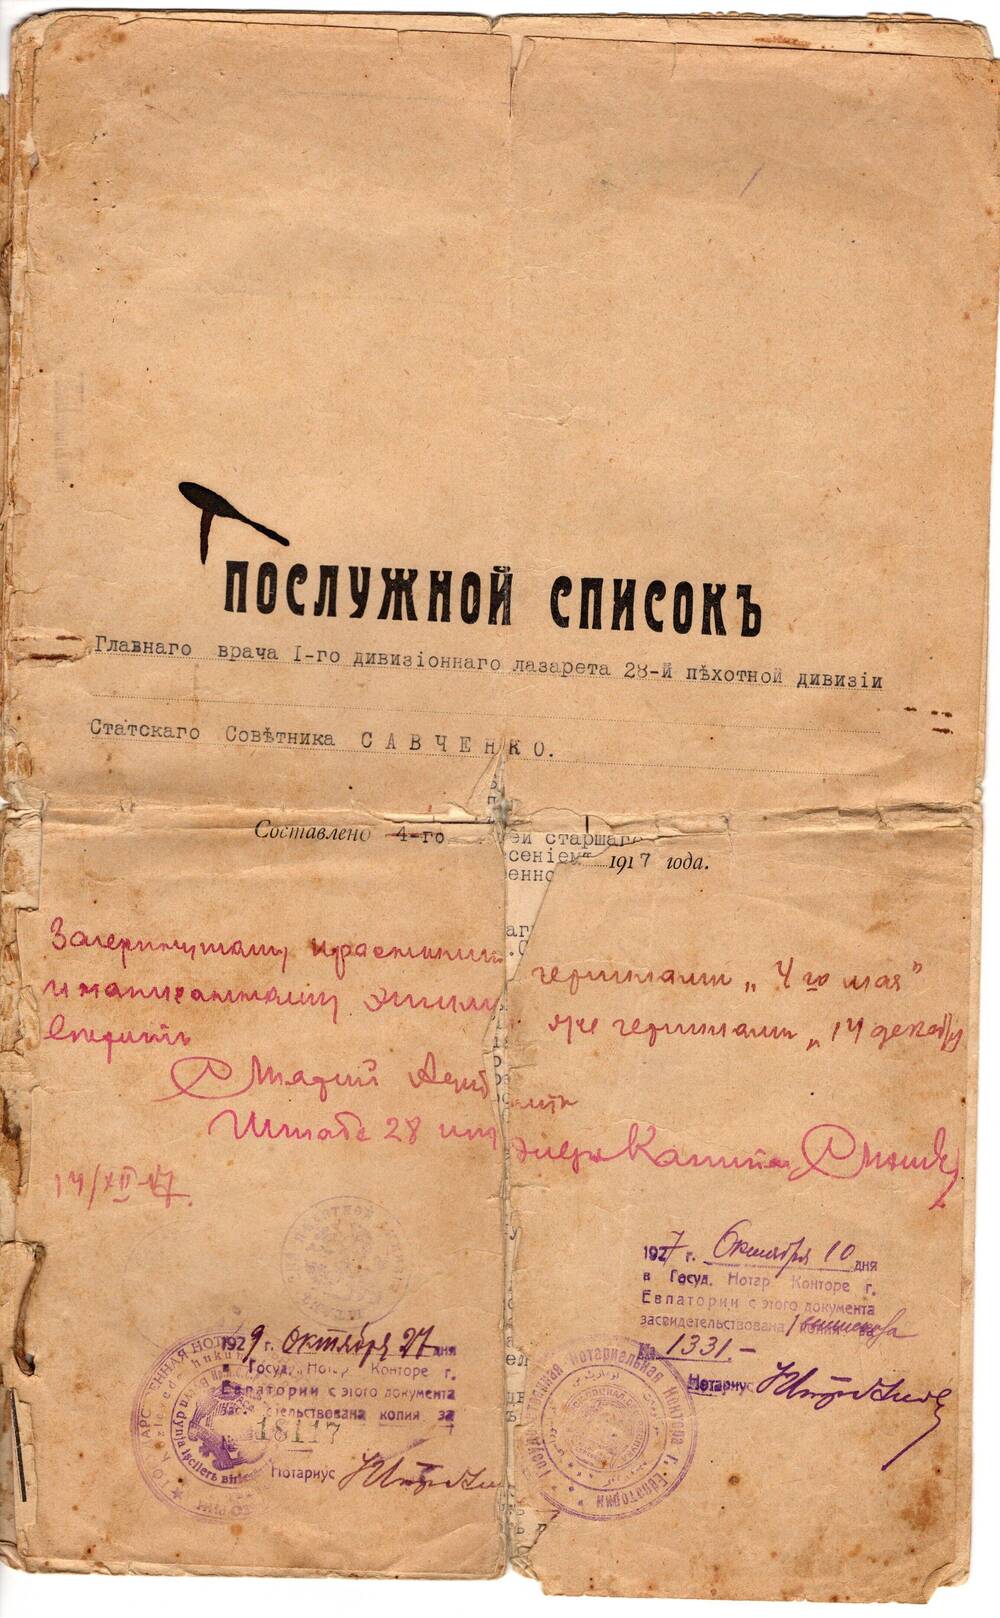 Послужной список главного врача I-го дивизионного лазарета 28 пехотной дивизии статского советника Савченко И.А. от 4.05.1917г.